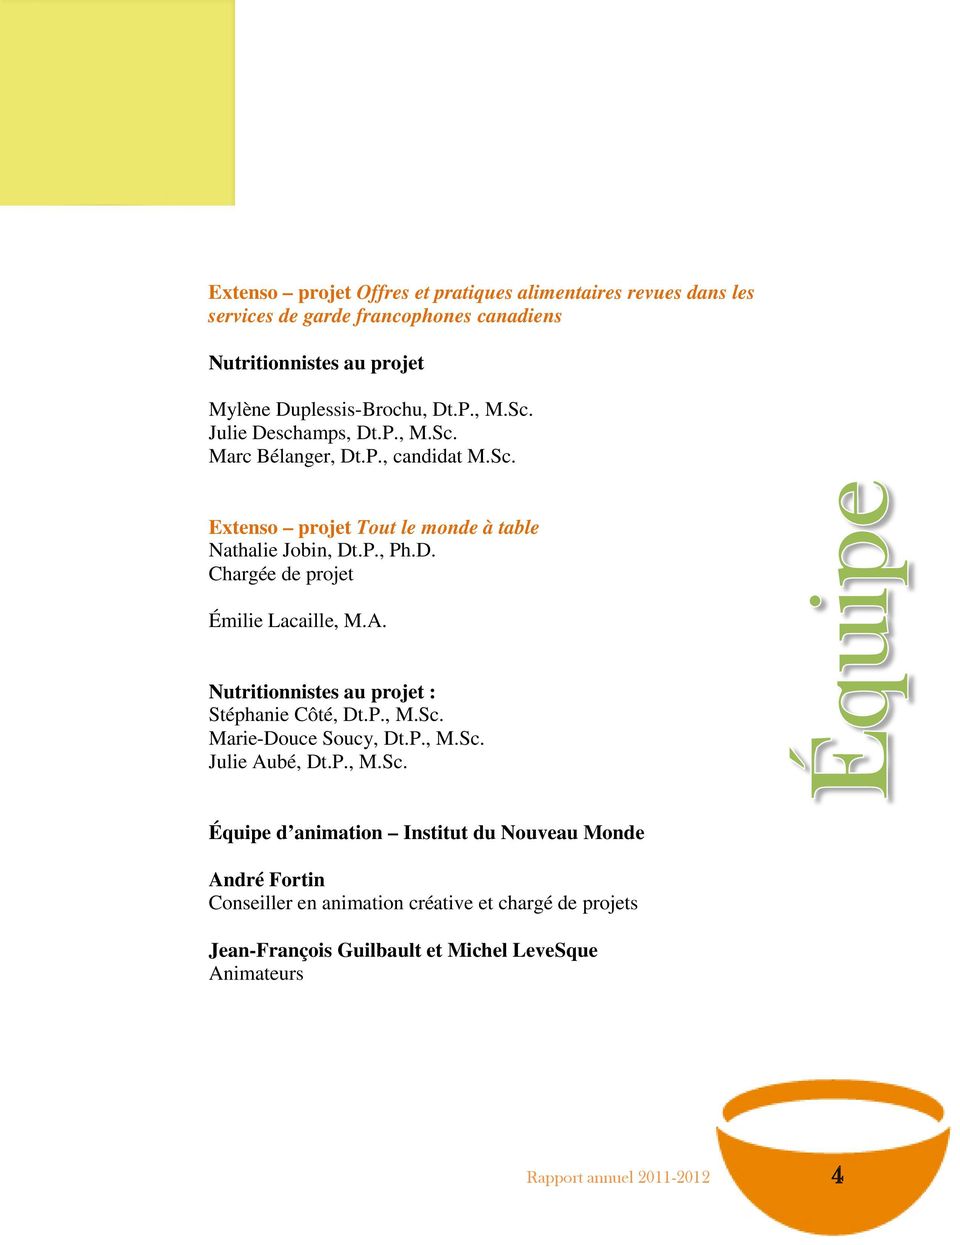 A. Nutritionnistes au projet : Stéphanie Côté, Dt.P., M.Sc.